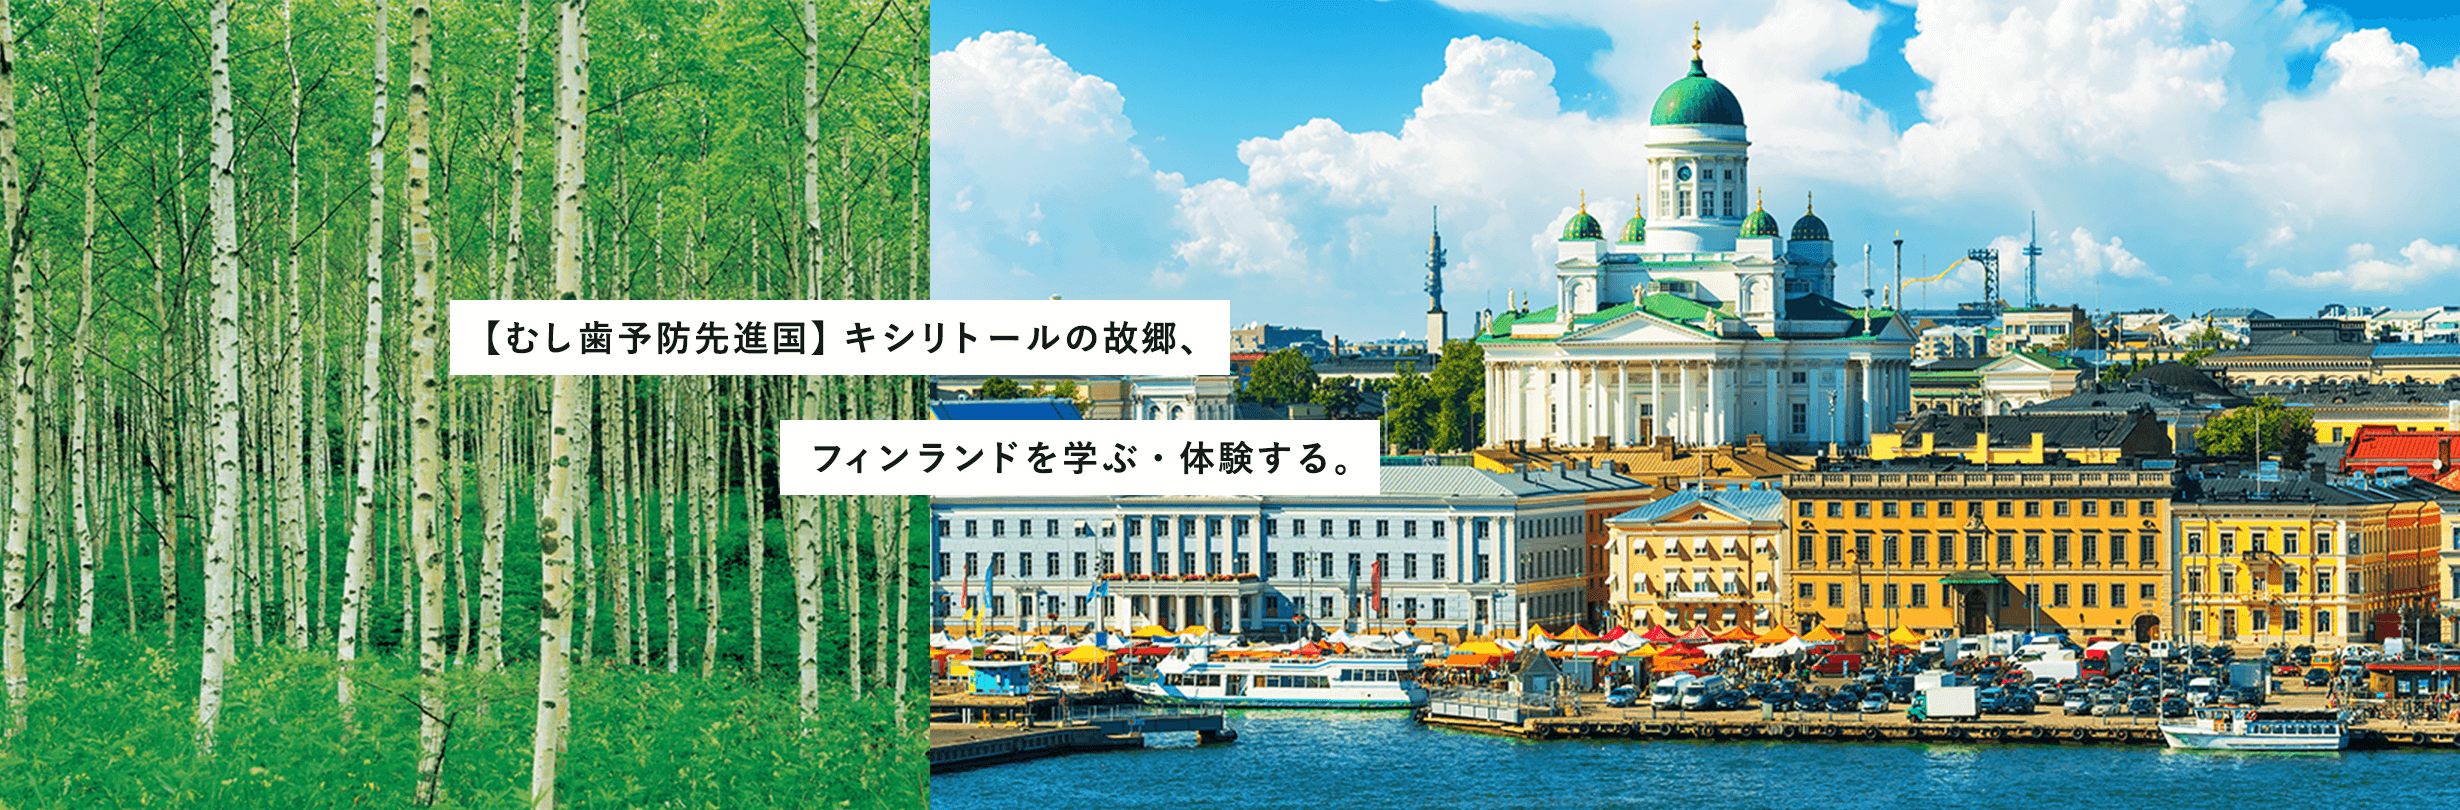 【むし歯予防先進国】キシリトールの故郷、フィンランドを学ぶ・体験する。